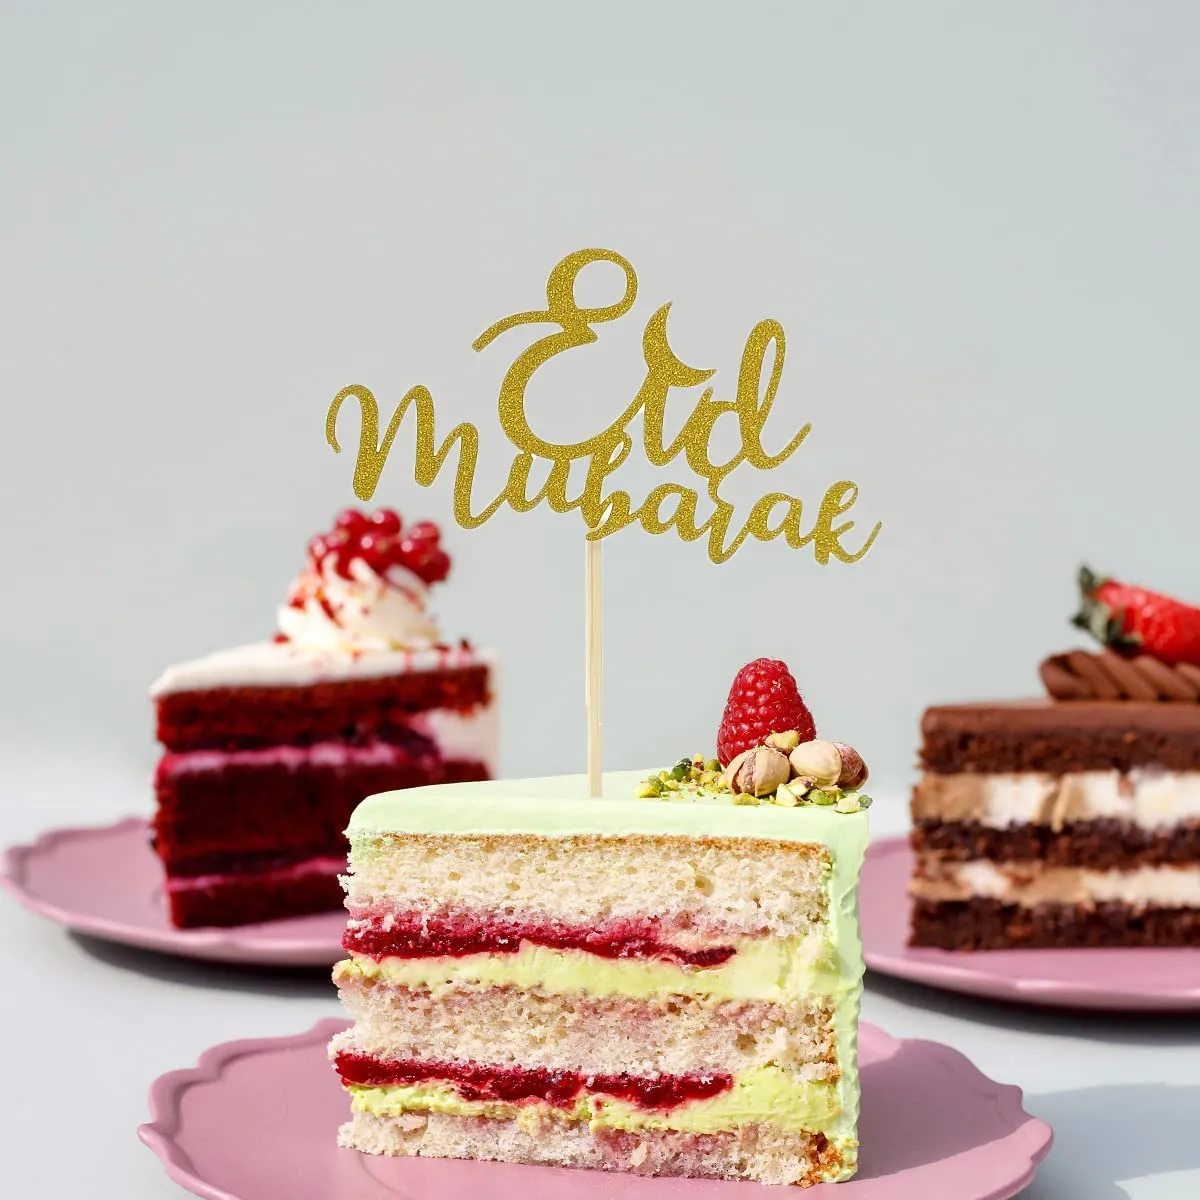 Lot de 5 paillettes eid mubarak gâteau topper pour eid mubarak cuisson gâteau décoration de fruits décoration de fête islamique Or big image 1